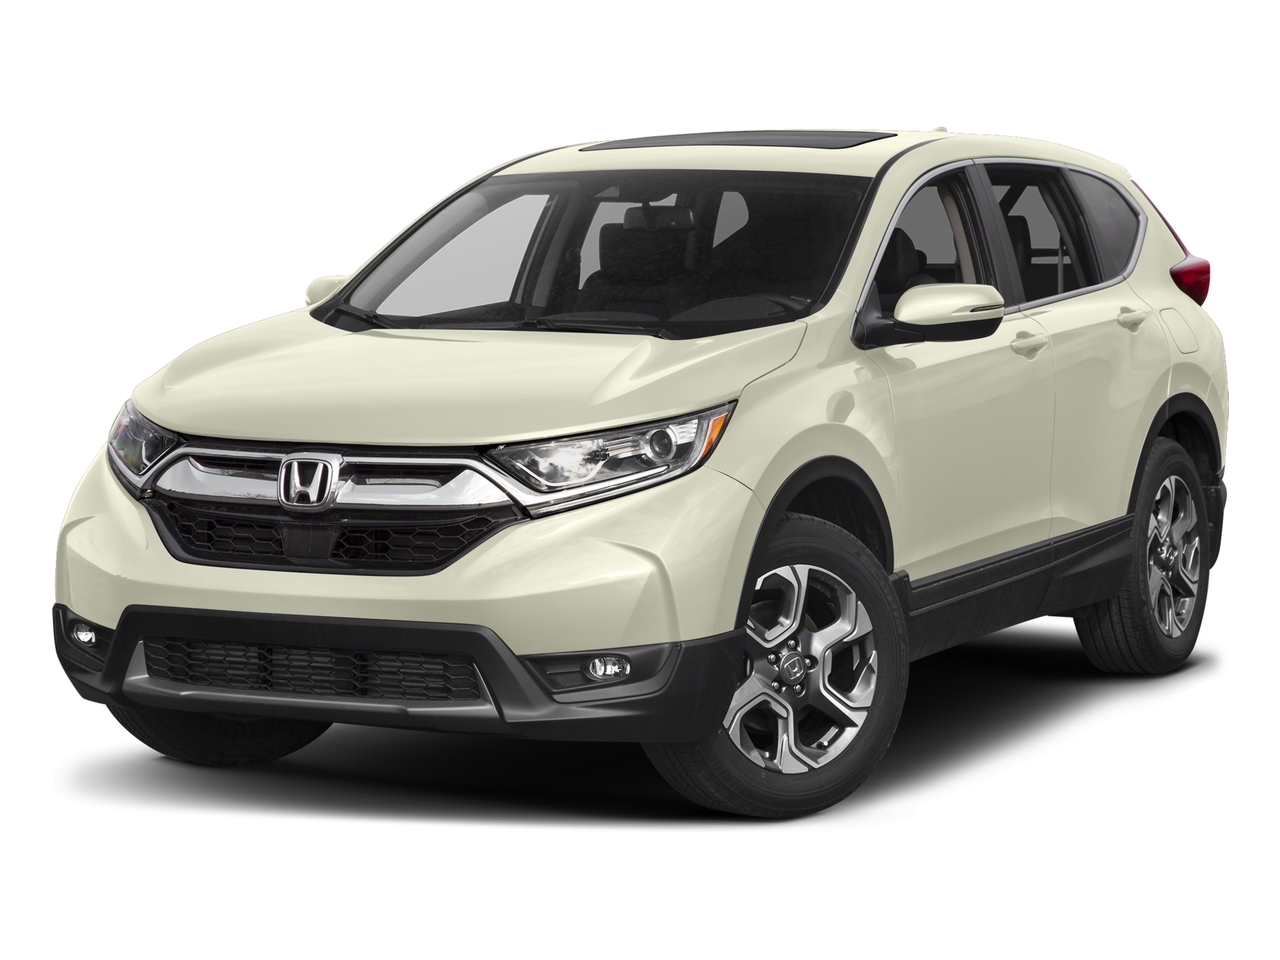 2017 Honda CR-V | CarPlay | Tscreen | Android | BT | USB | 190 HP